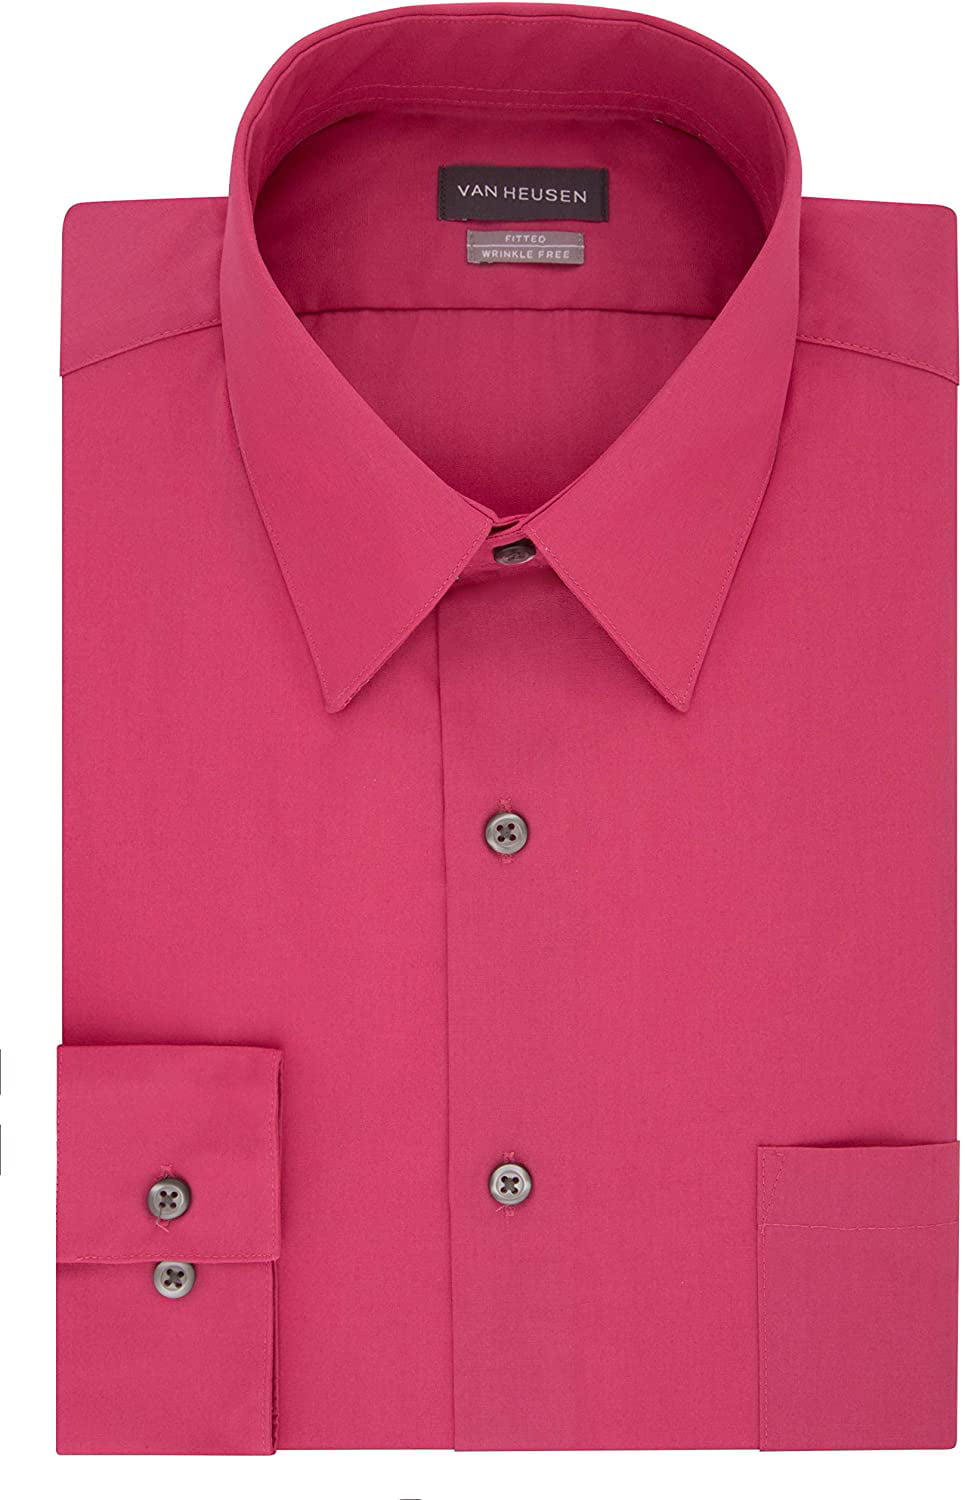 Van Heusen Men's Dress Shirt Fitted Poplin Solid, desert rose, 17.5 ...